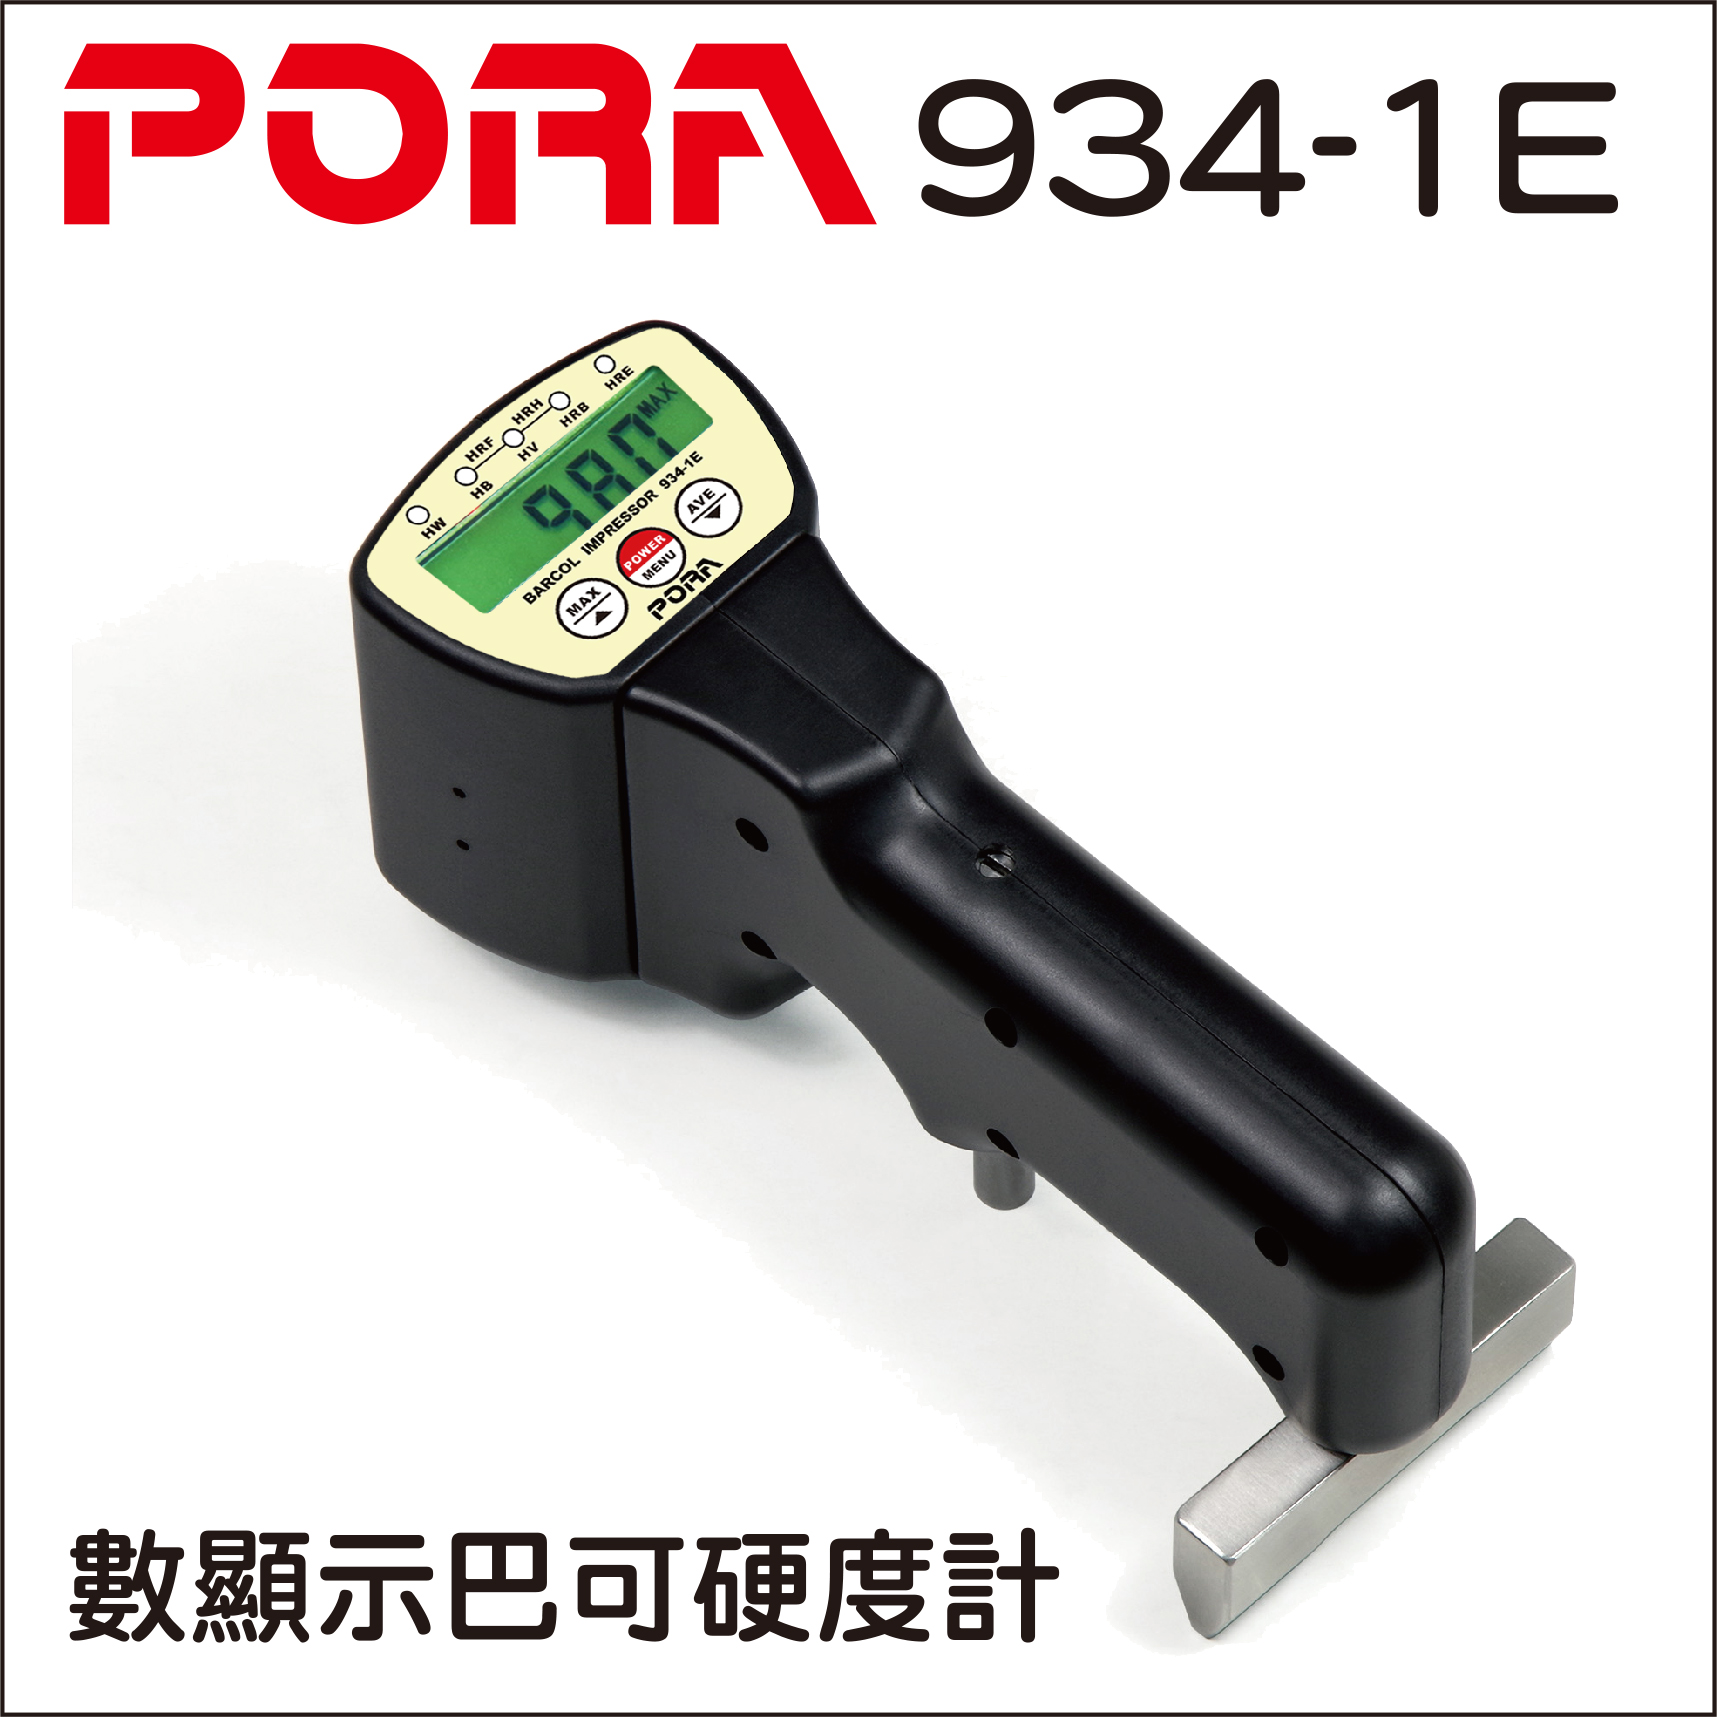 PORA 934-1E 可攜式巴可硬度計的第1張圖片